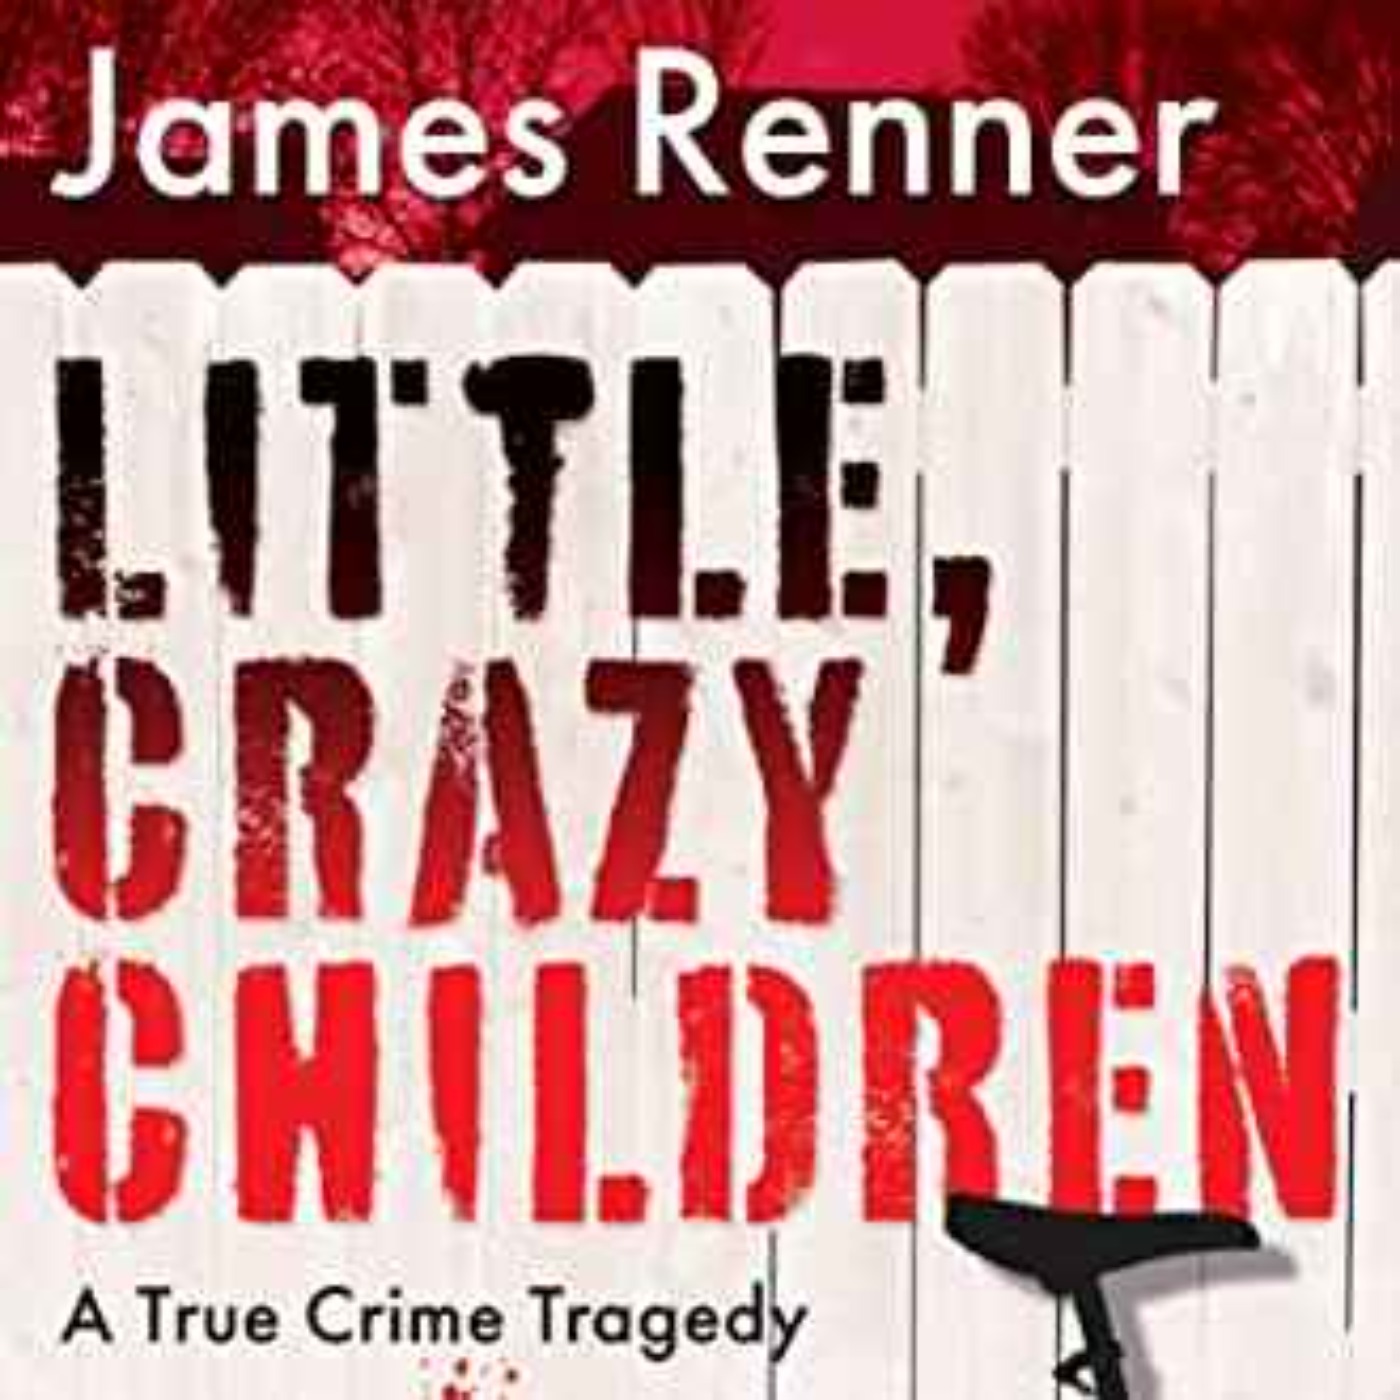 James Renner - Little Crazy Children